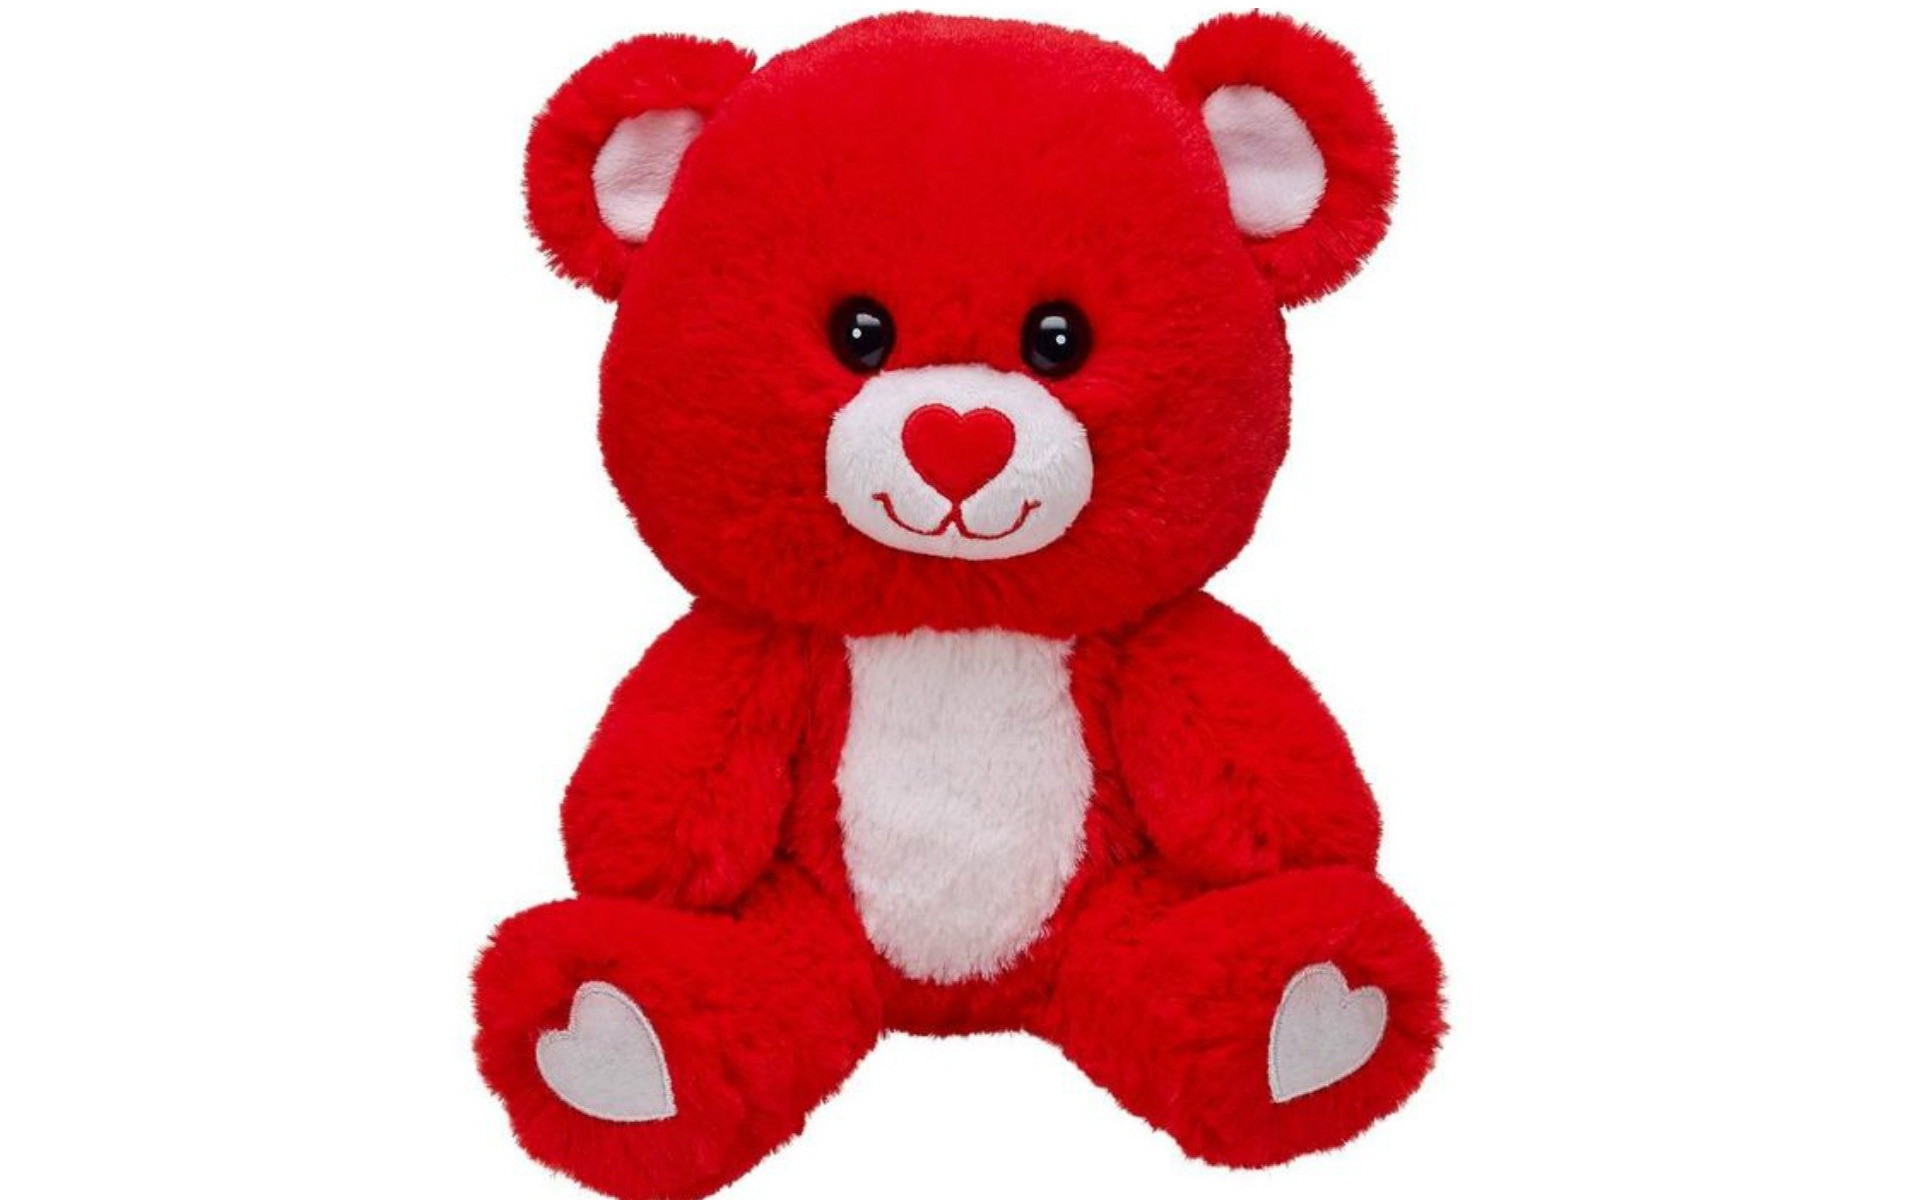 New Teddy Bear Wallpaper - Cute Red Teddy Bear , HD Wallpaper & Backgrounds